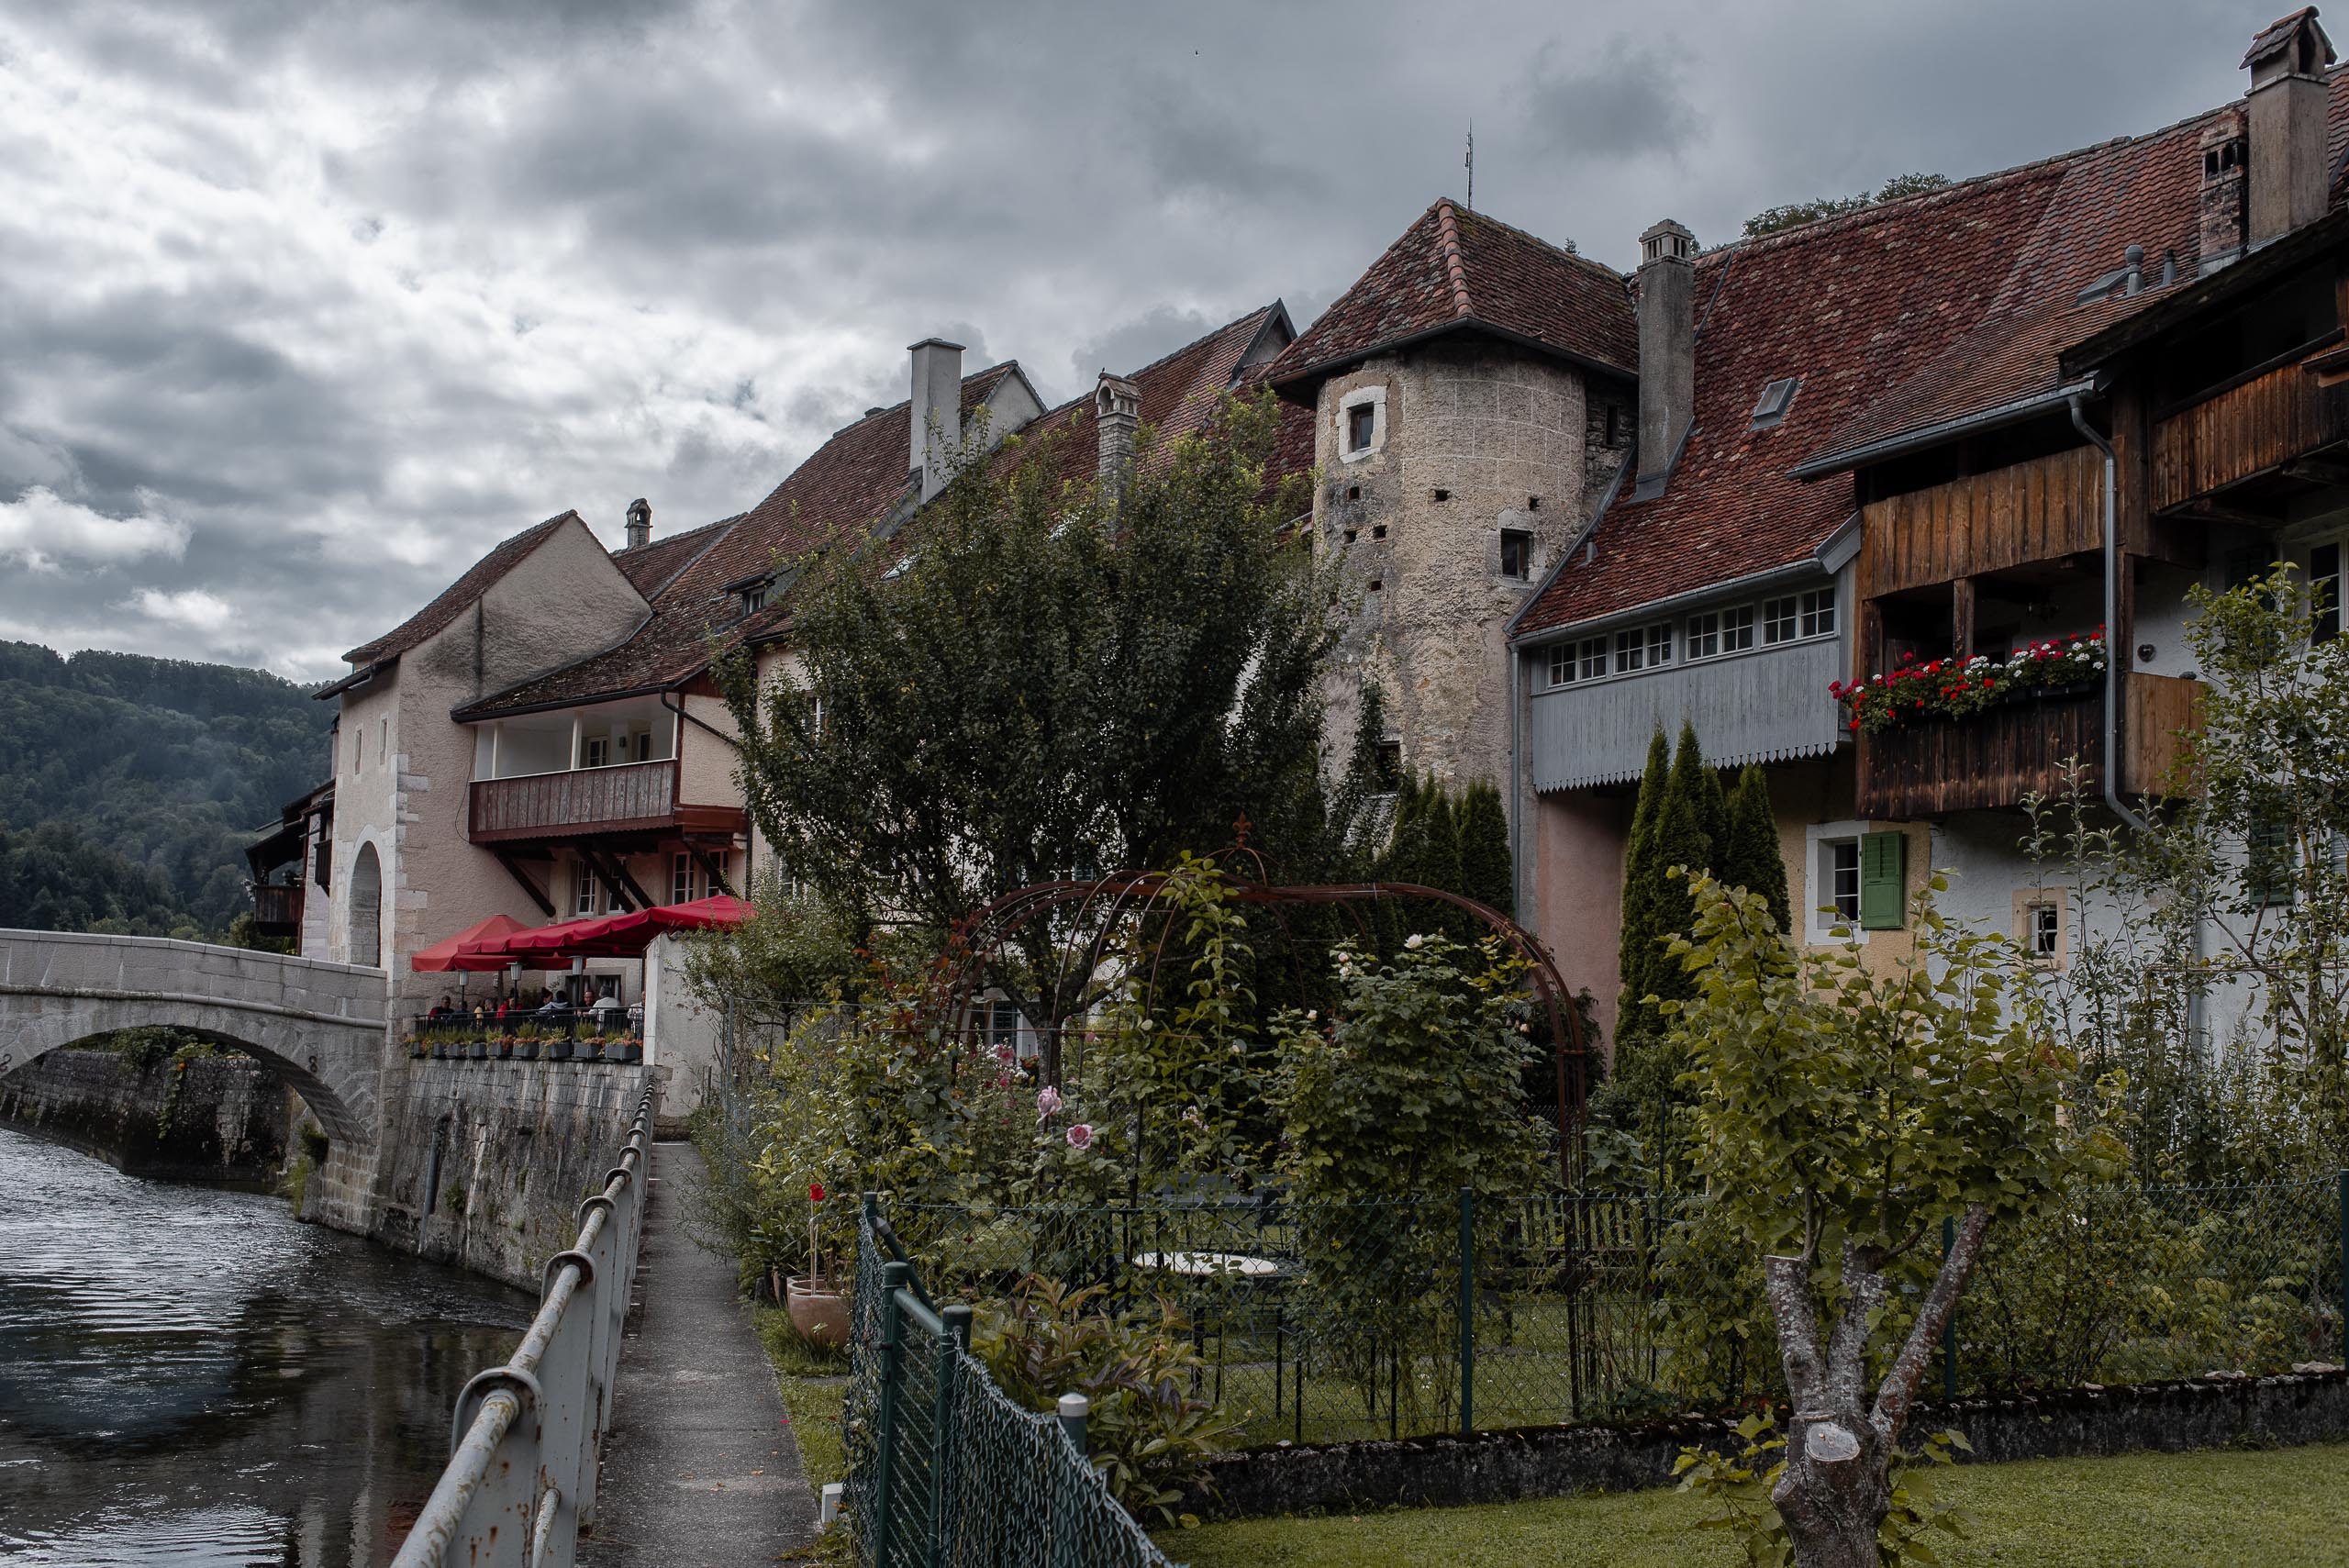 Saint-Ursanne od strony rzeki Doubs